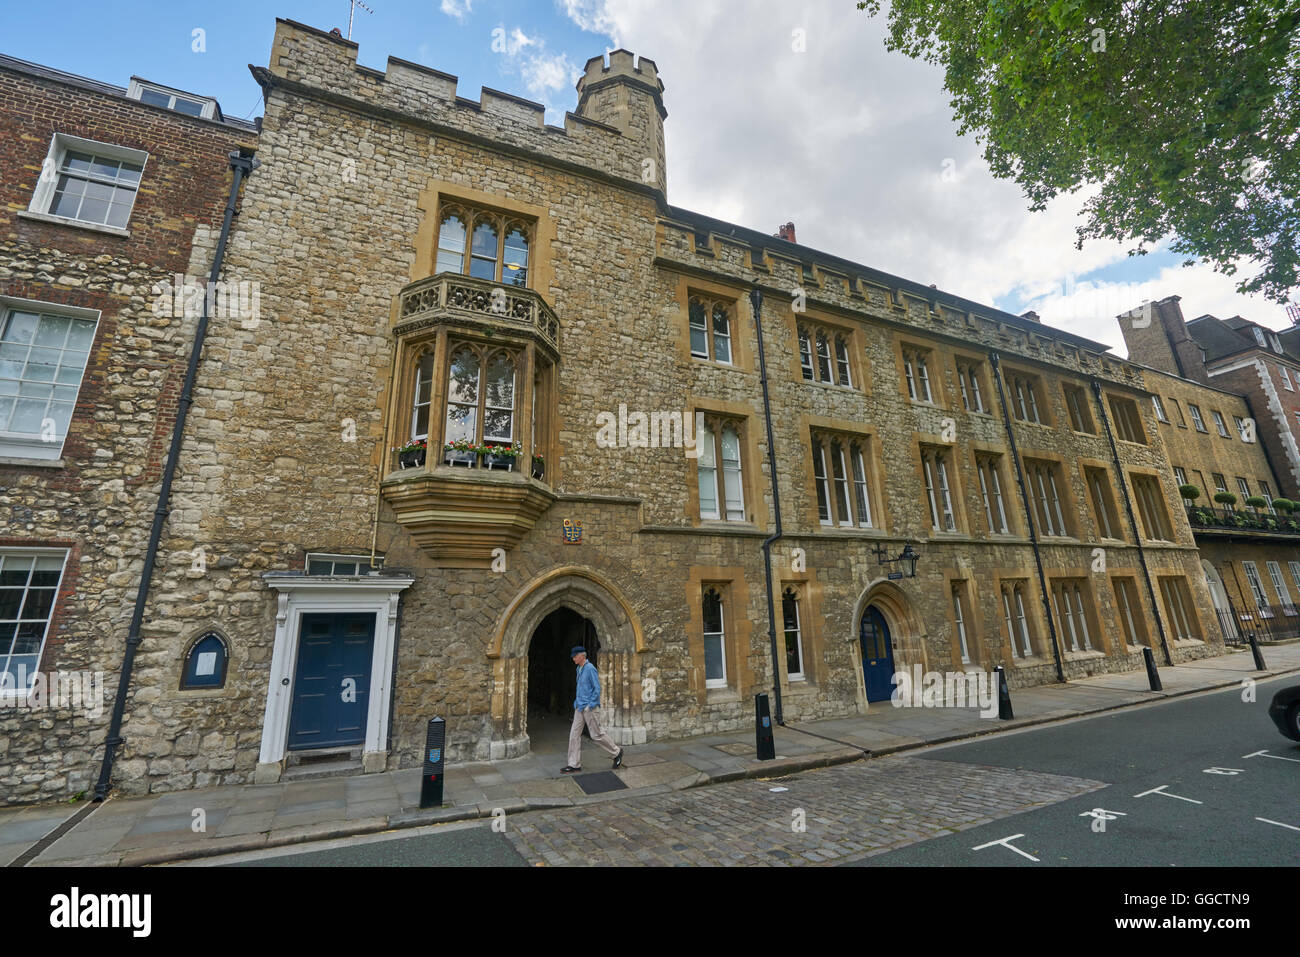 Sister college. Школа Вестминстер. Вестминстерская школа 17 век. Westminster School фасад. Westminster School London.